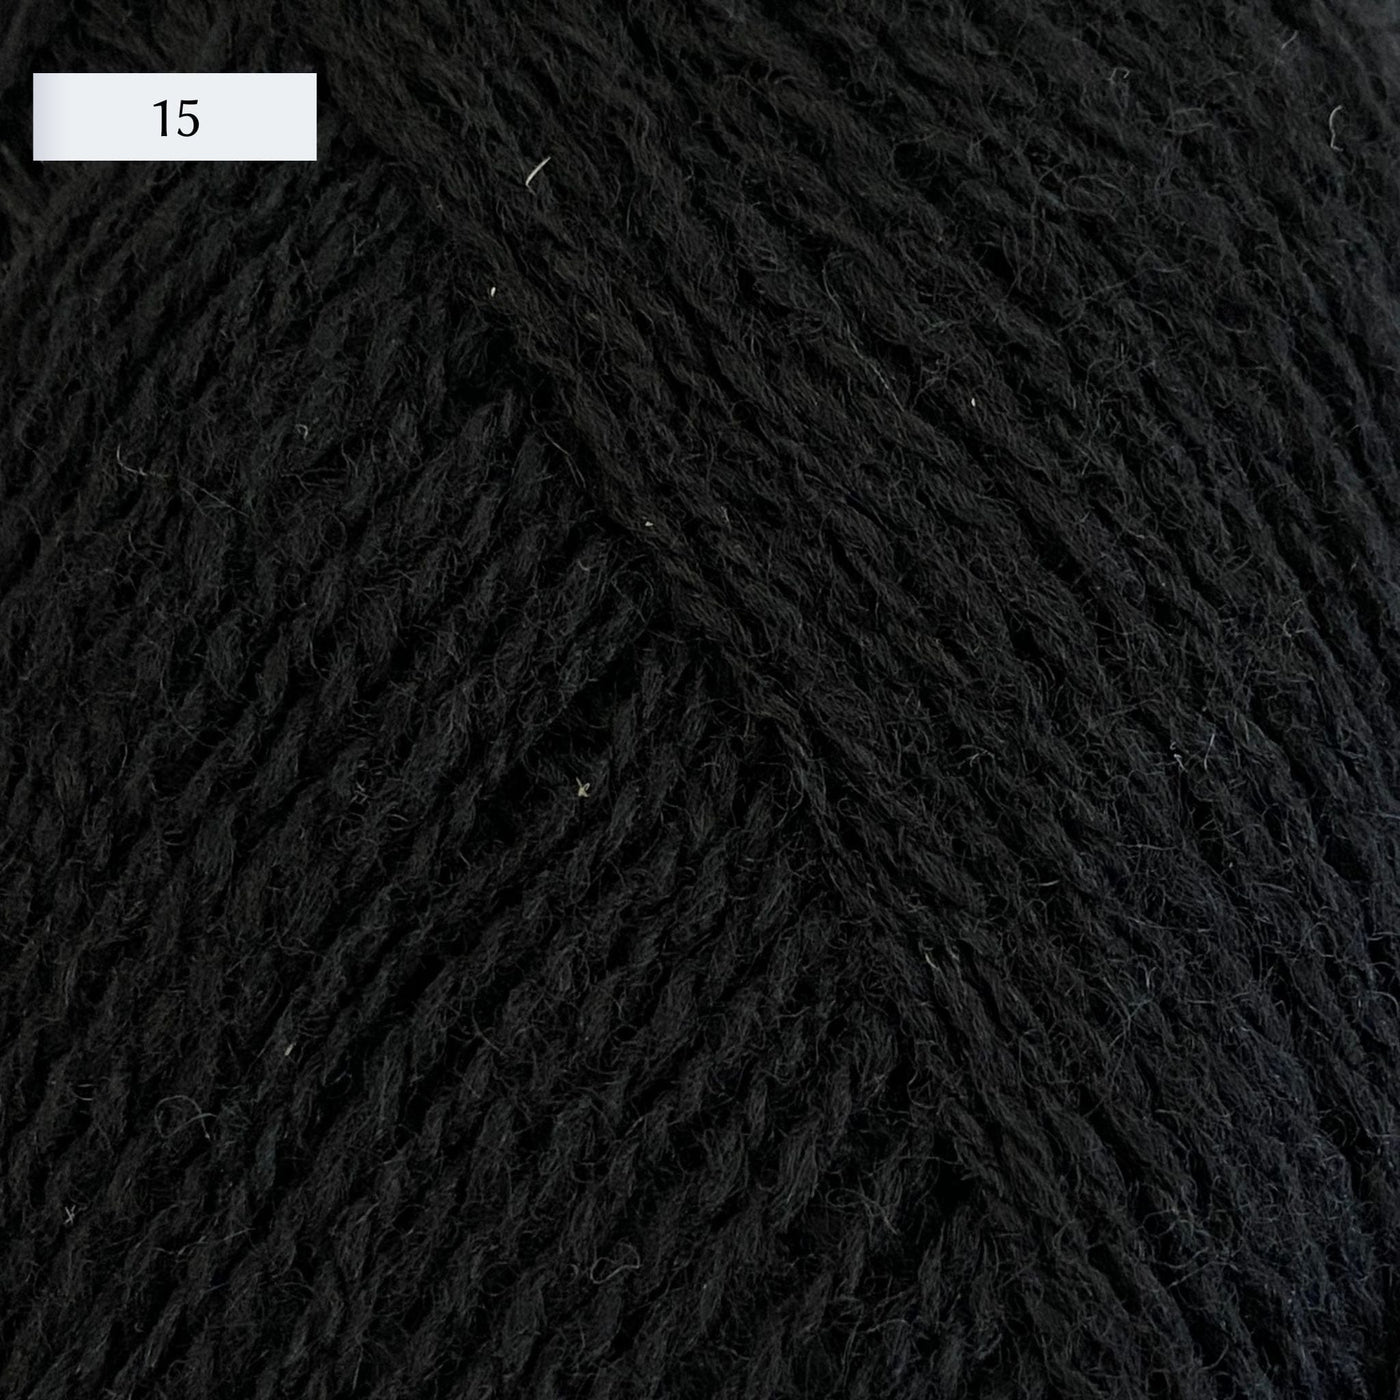 Rauma Lamullgarn, a fingering weight yarn, in color 15, a warm black